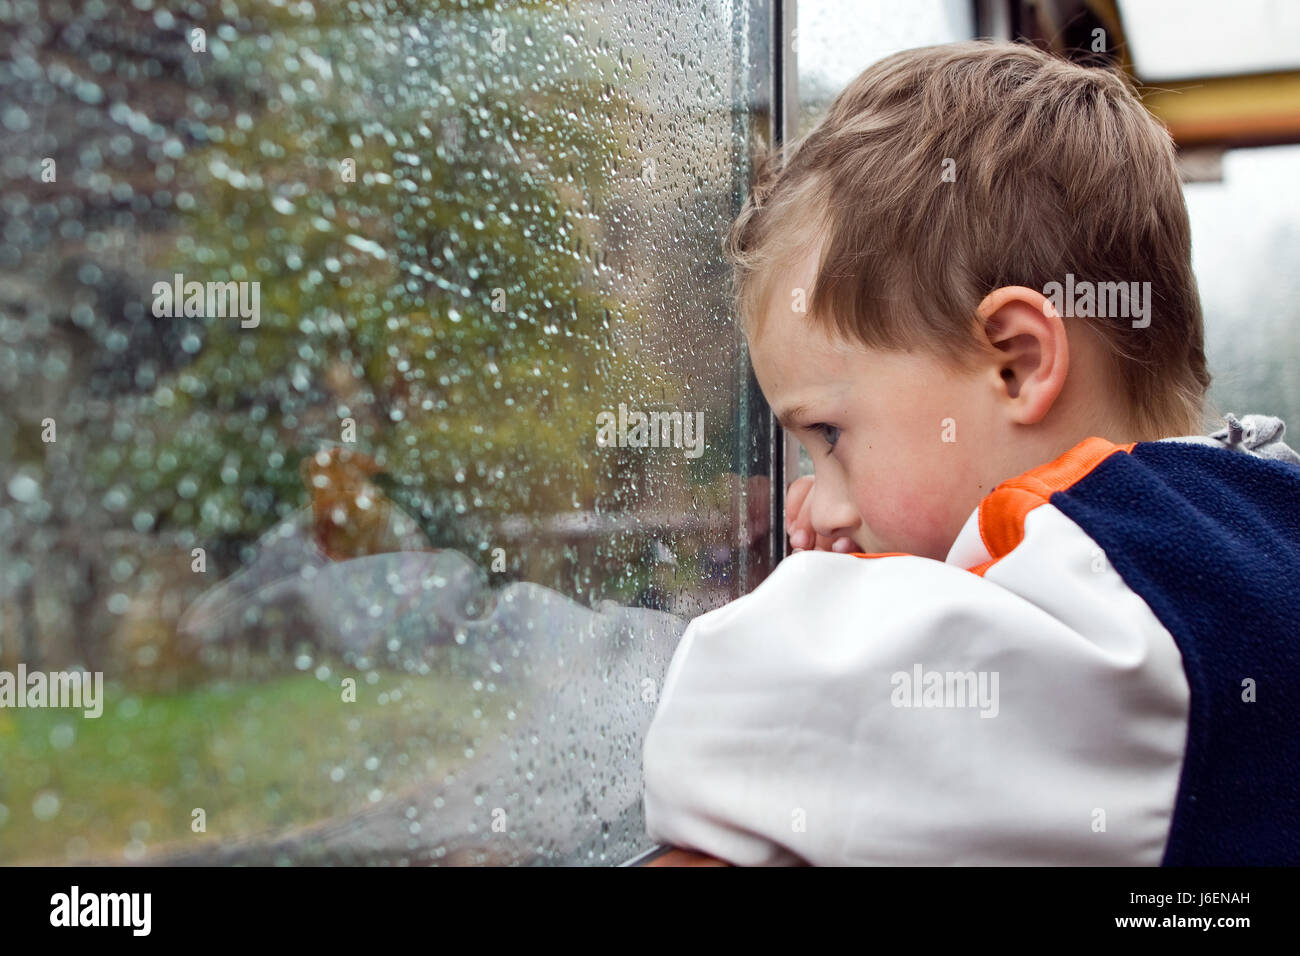 wait waiting window porthole dormer window pane sad young younger child weather Stock Photo